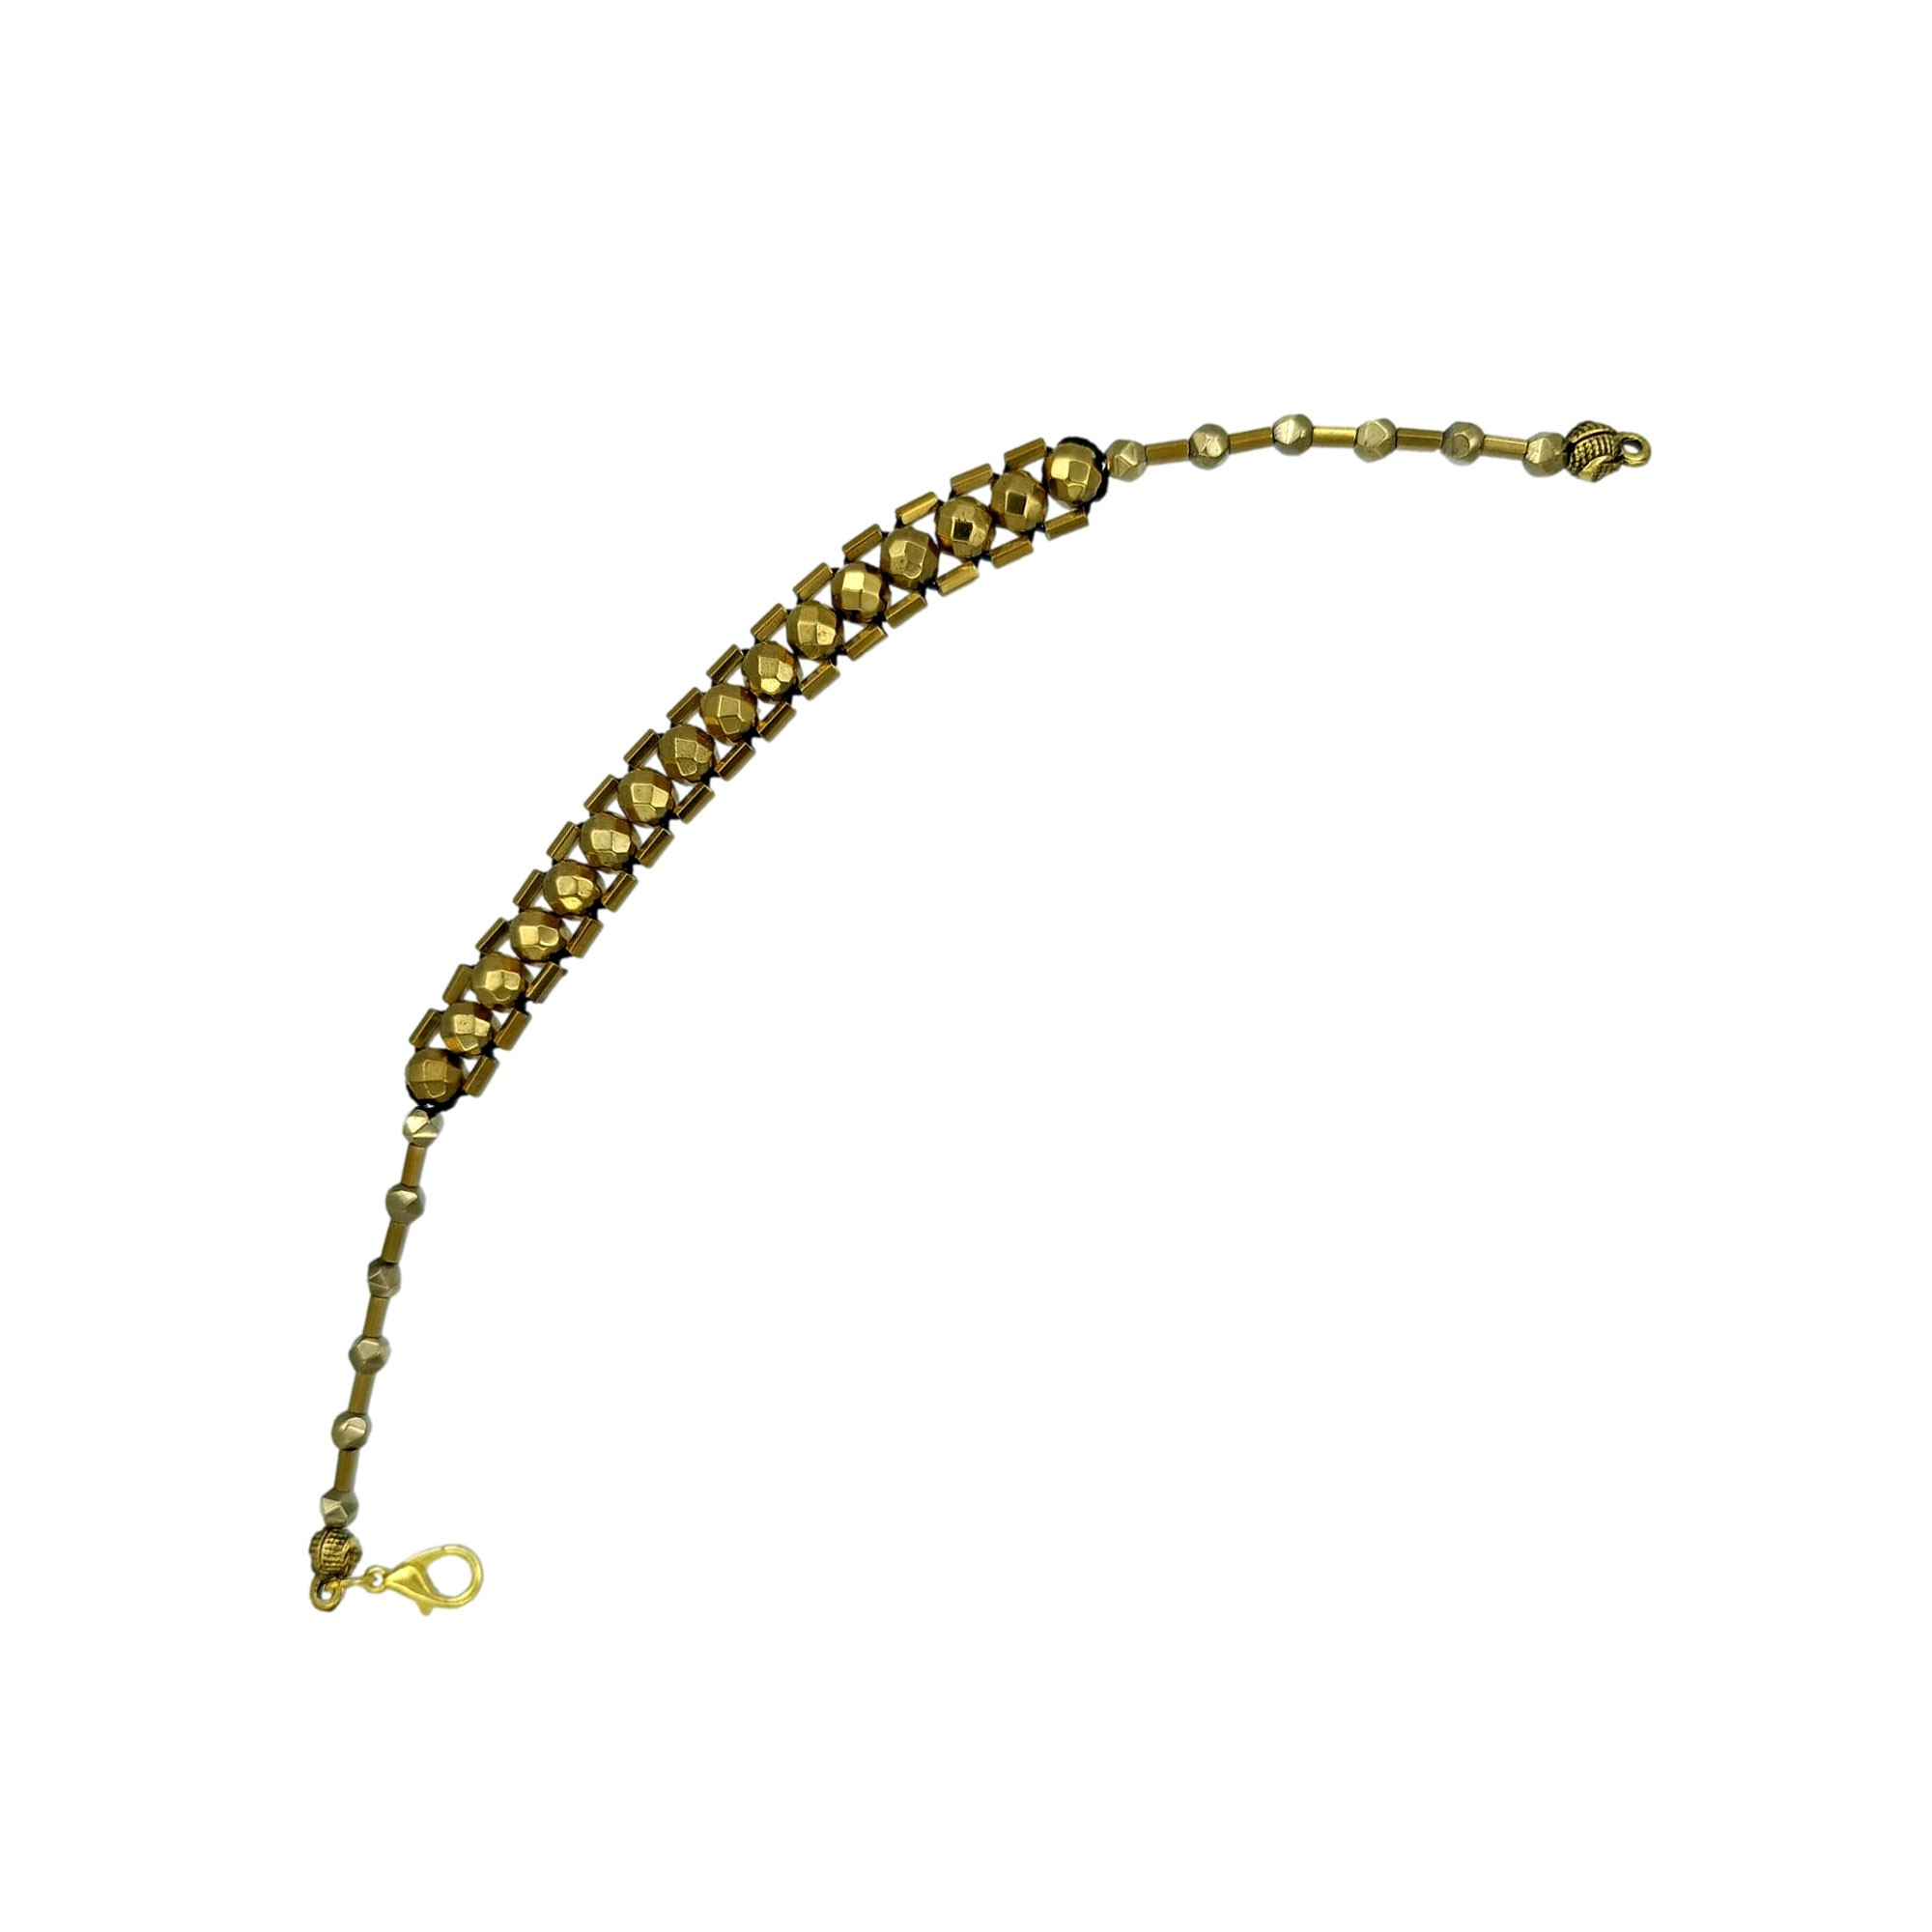 Fasetalı Küre Kesim Altın Renk Hematit Taşı Zaza Tesbih Bileklik 21,5 cm